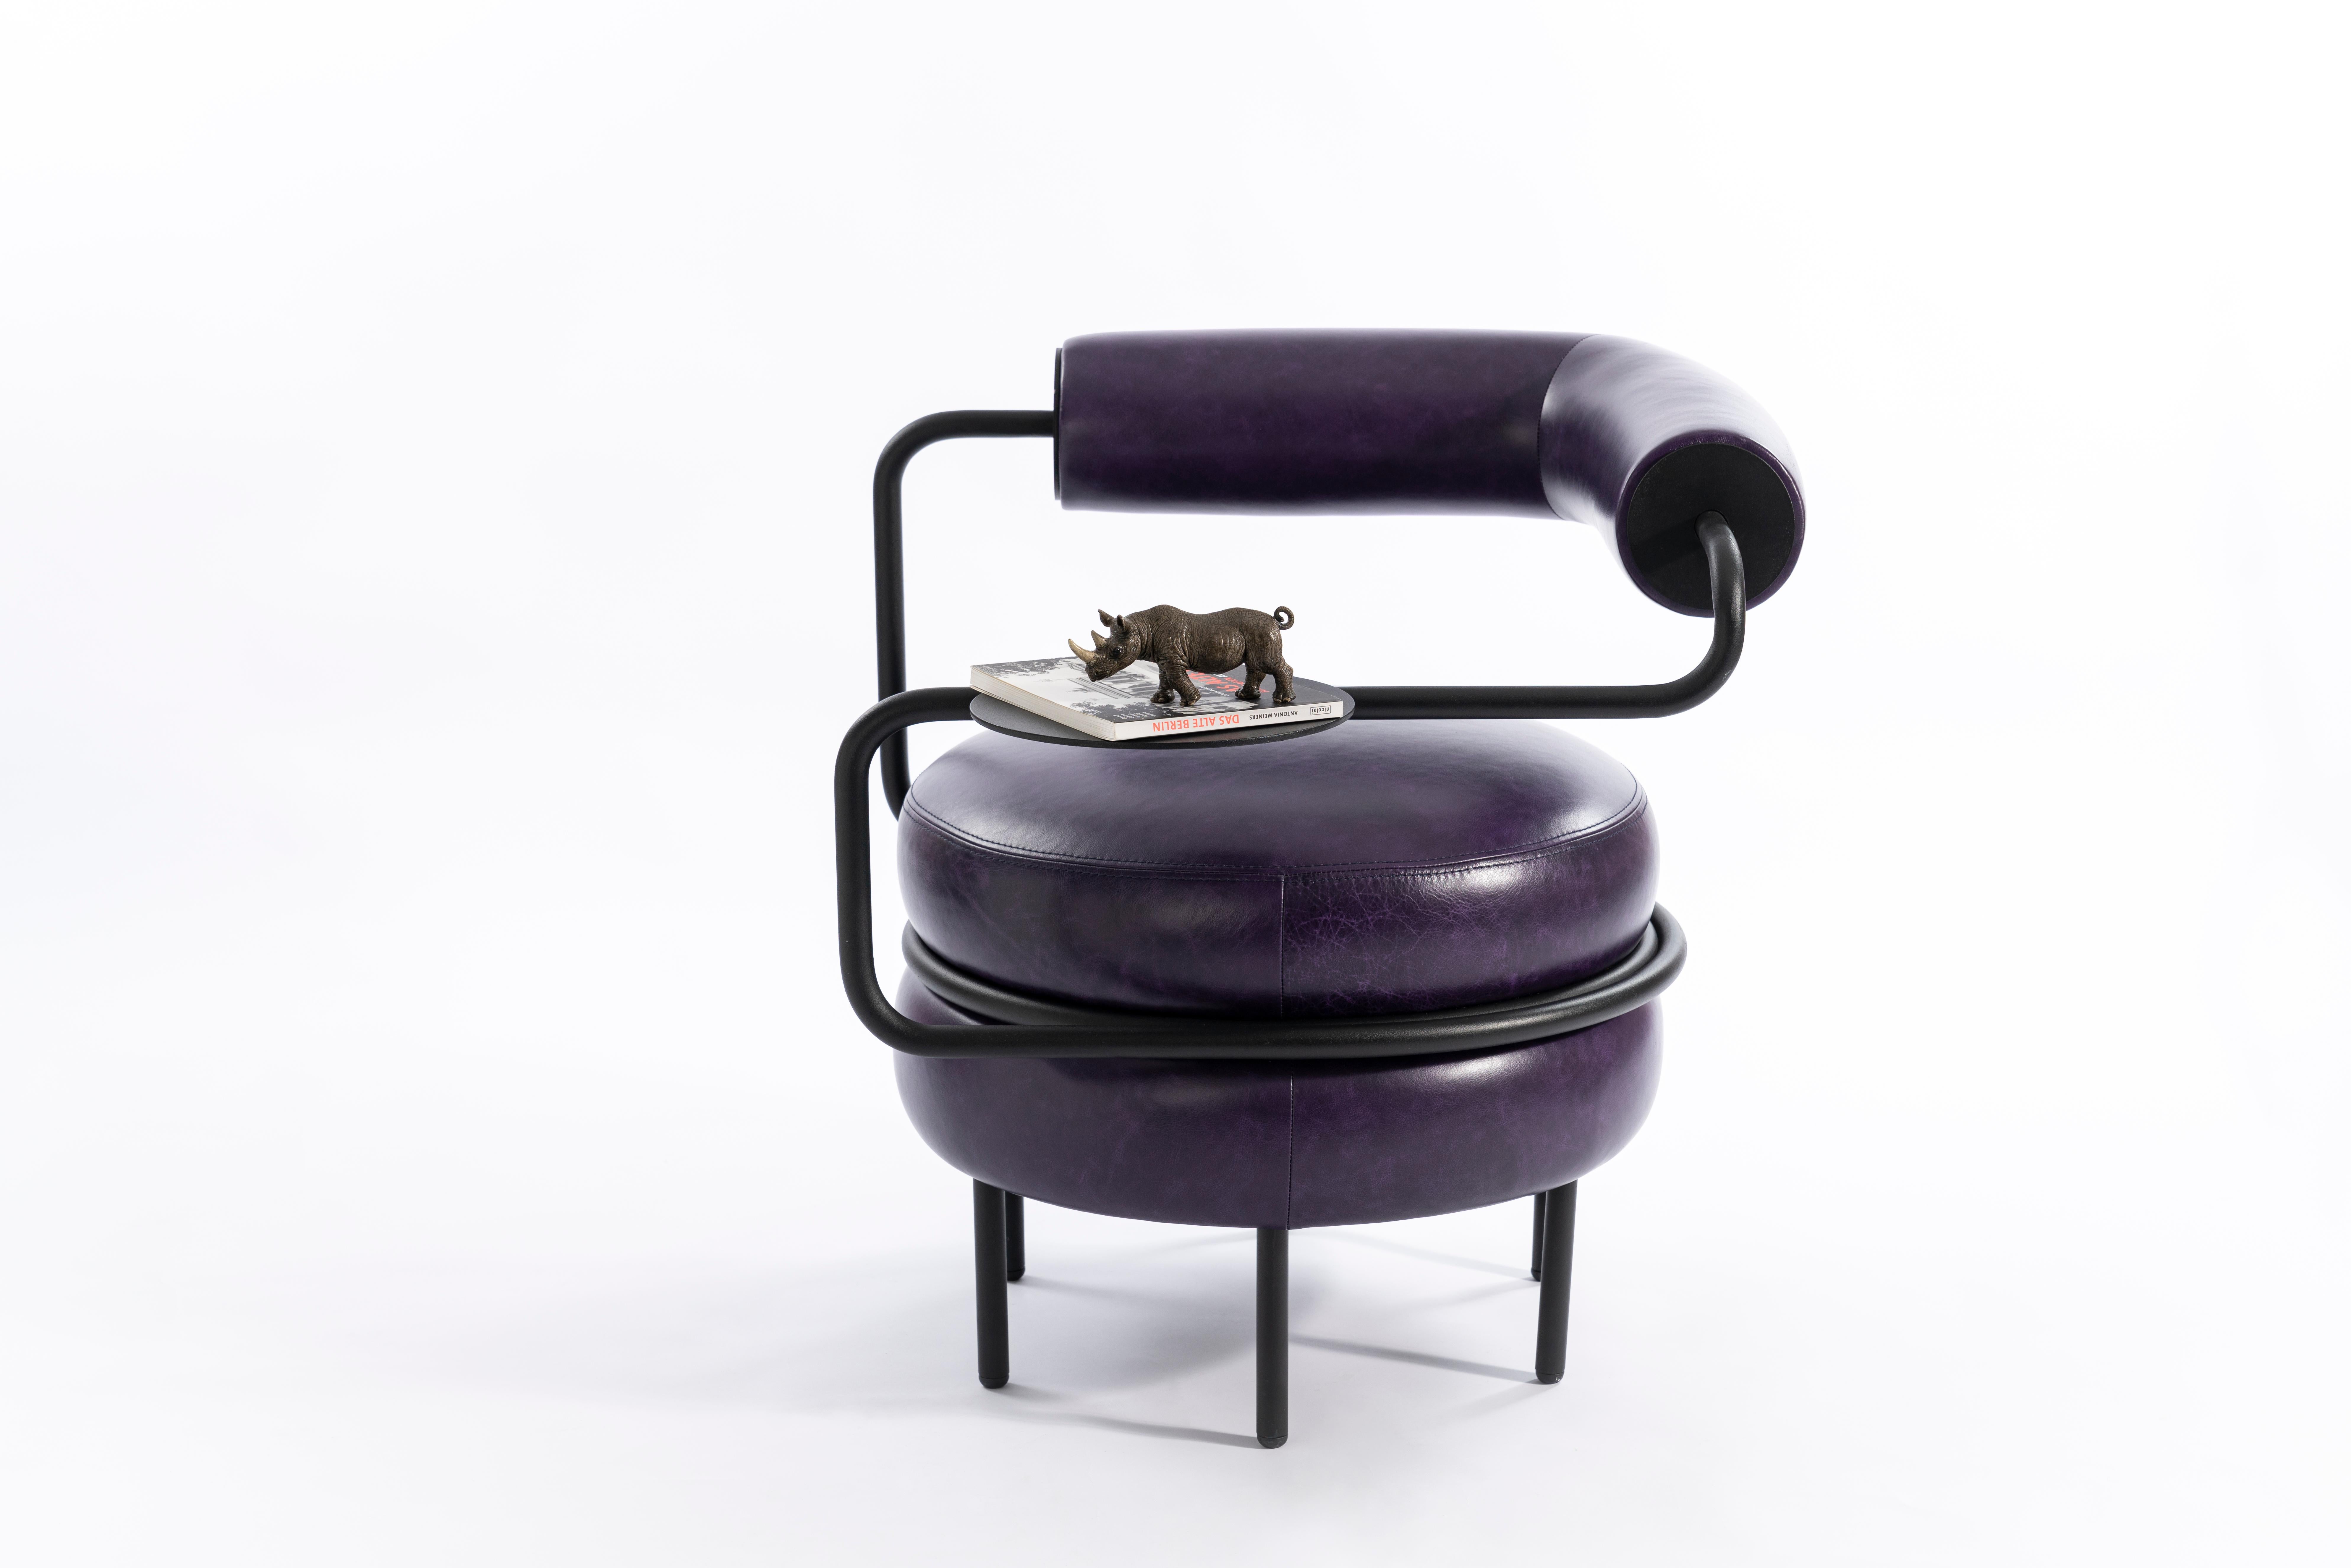 L'interprétation de KONTRA de Macaron. 
Un fauteuil en cuir armé offre une assise confortable avec sa propre table d'appoint.

Découvrez le style et le confort de la chaise Macaron en cuir moderne du milieu du siècle.
La chaise Macaron en cuir